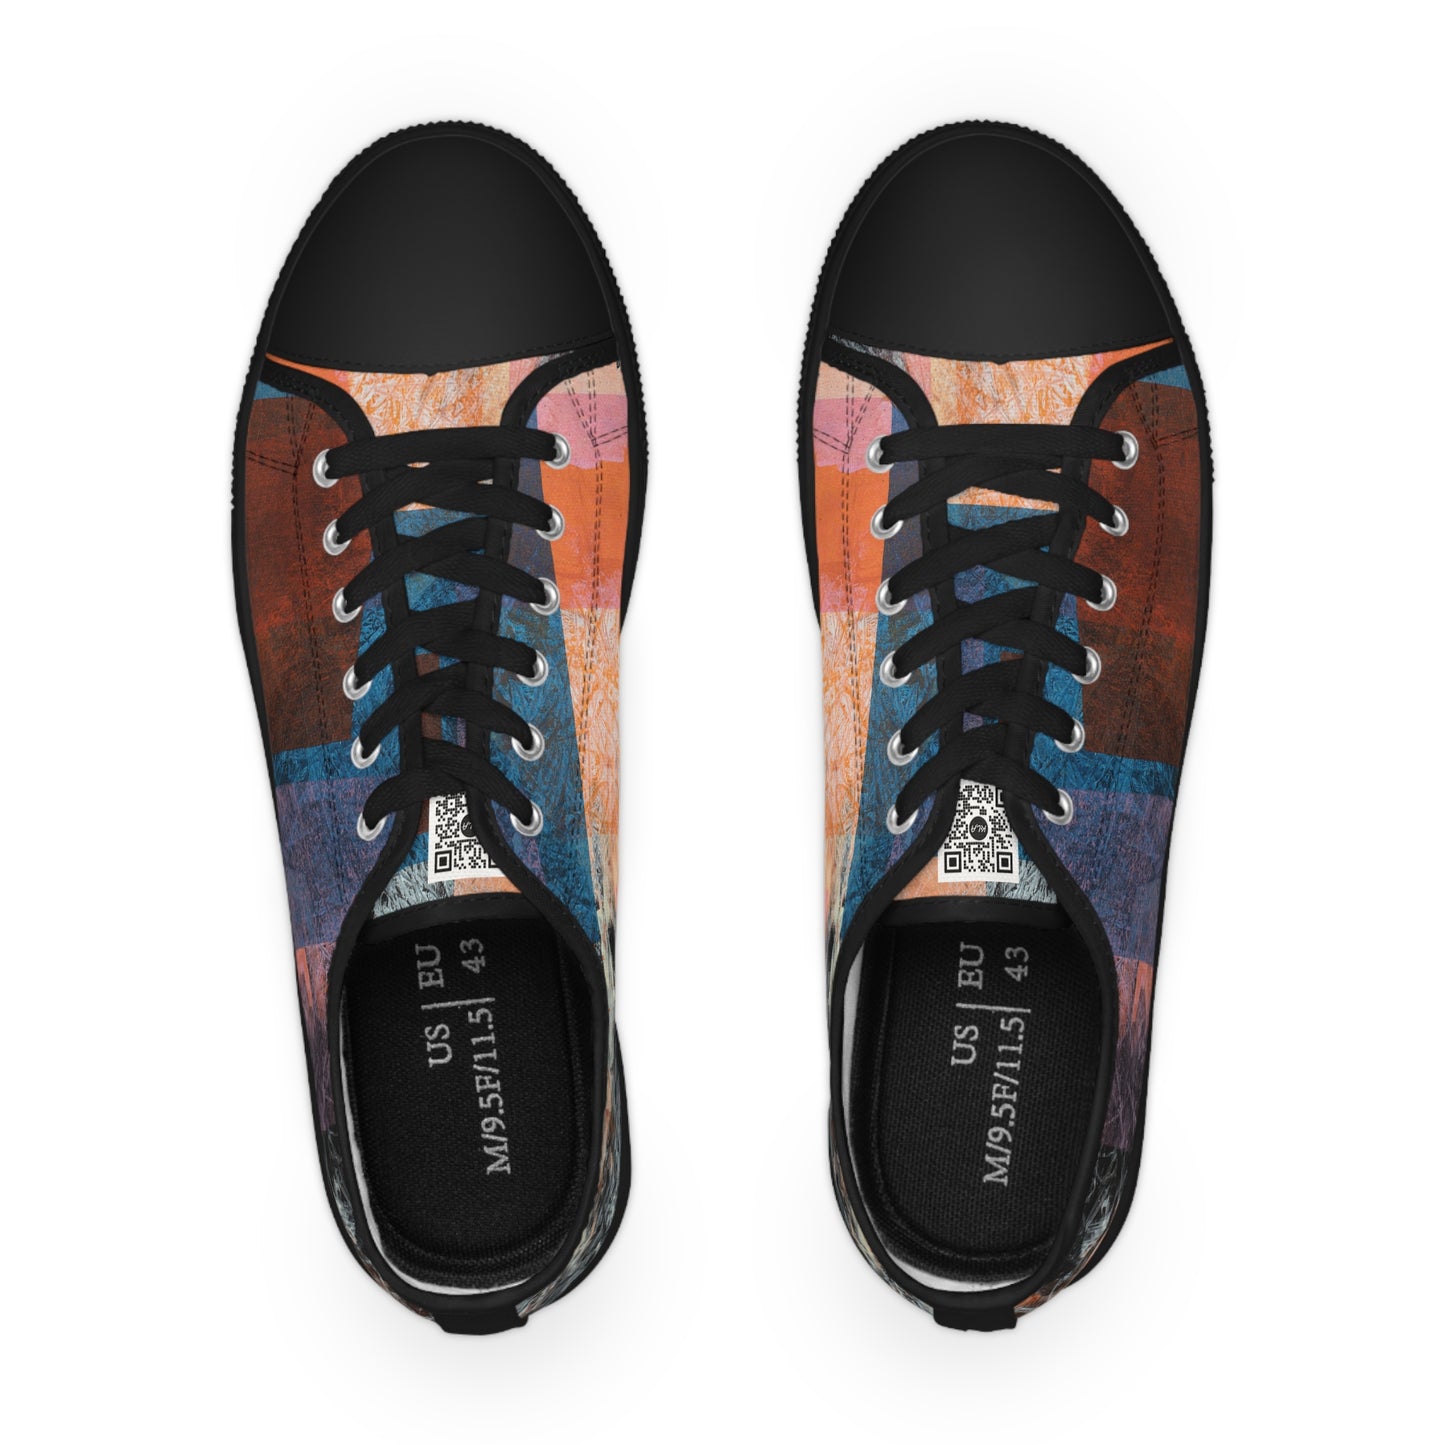 Men's Low Top Sneakers - 02862 US 14 Black sole